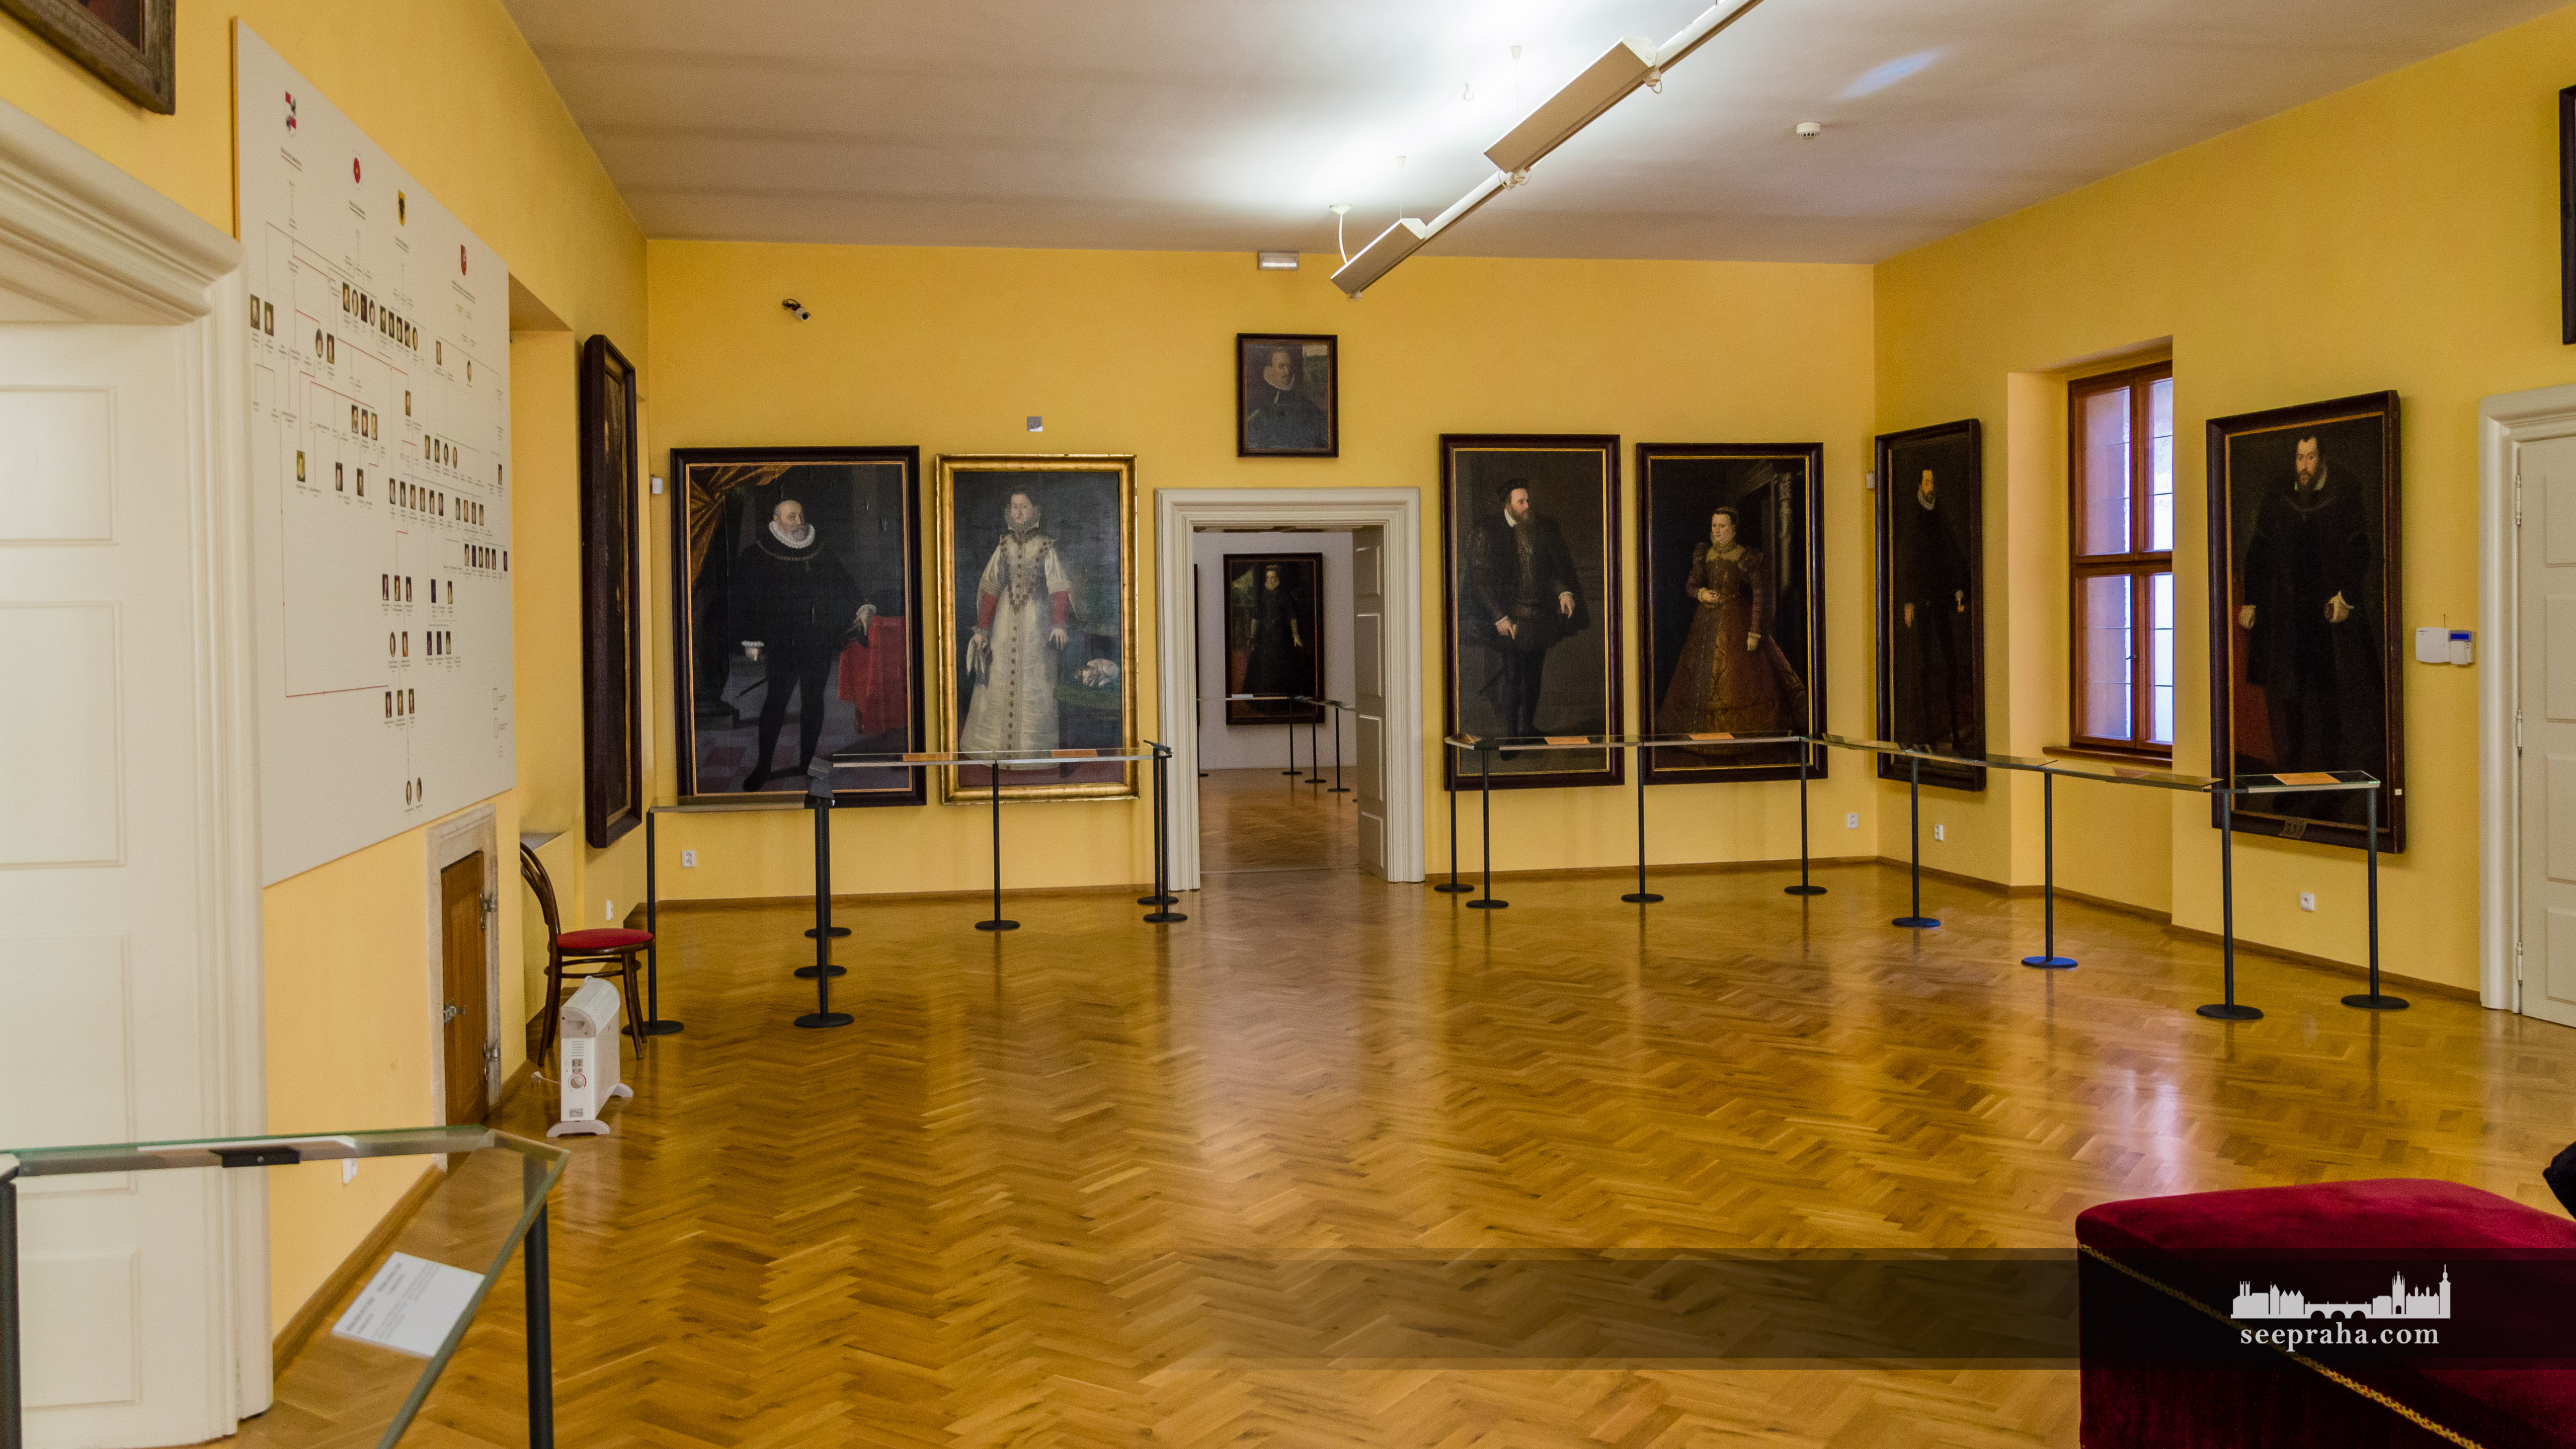 Музей в Лобковіцкому палаці (Празький Град), Прага, Чехія